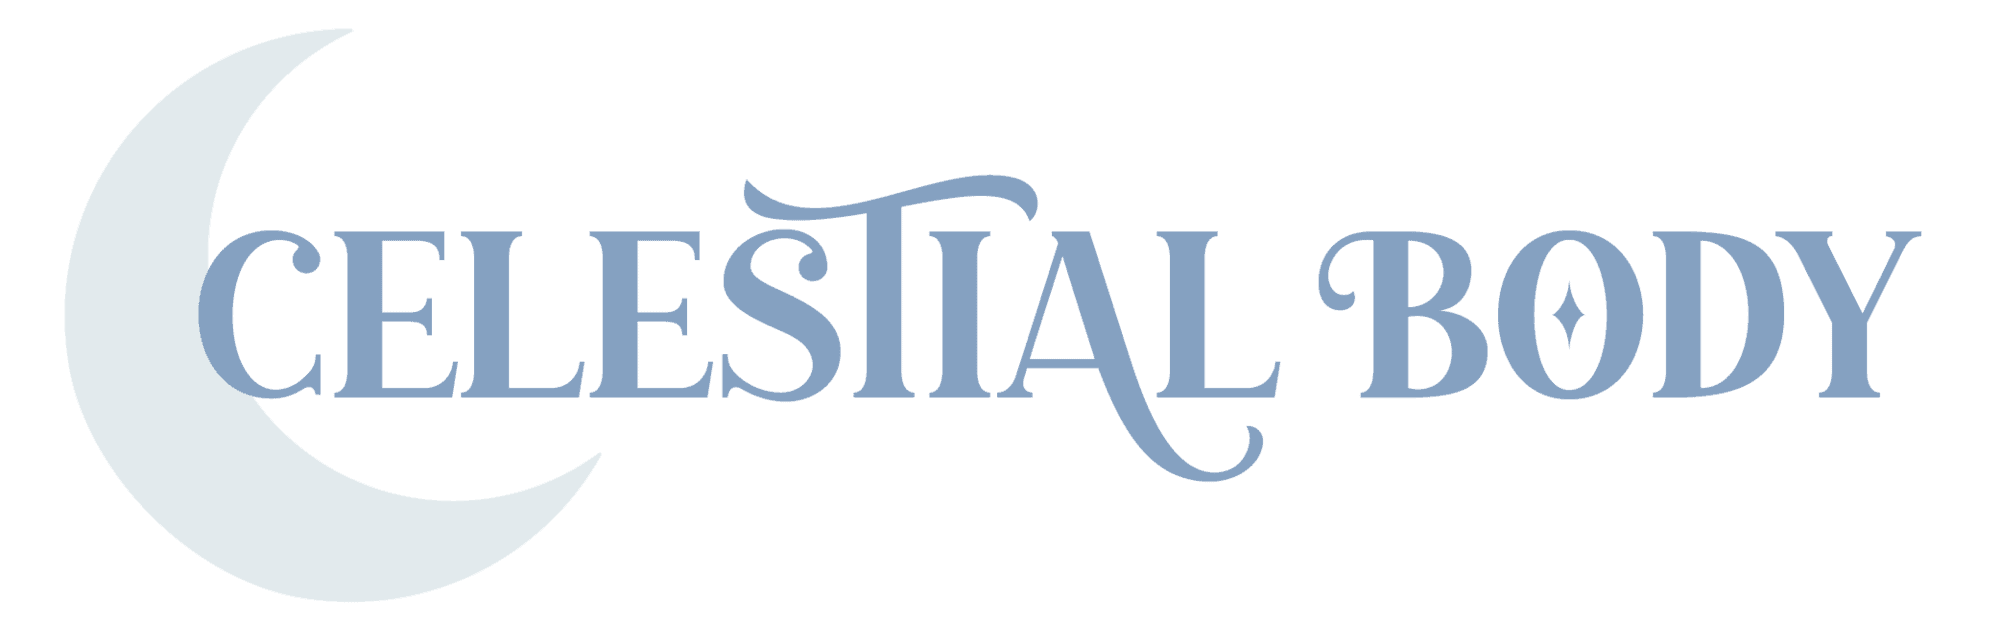 celestial-logos-02